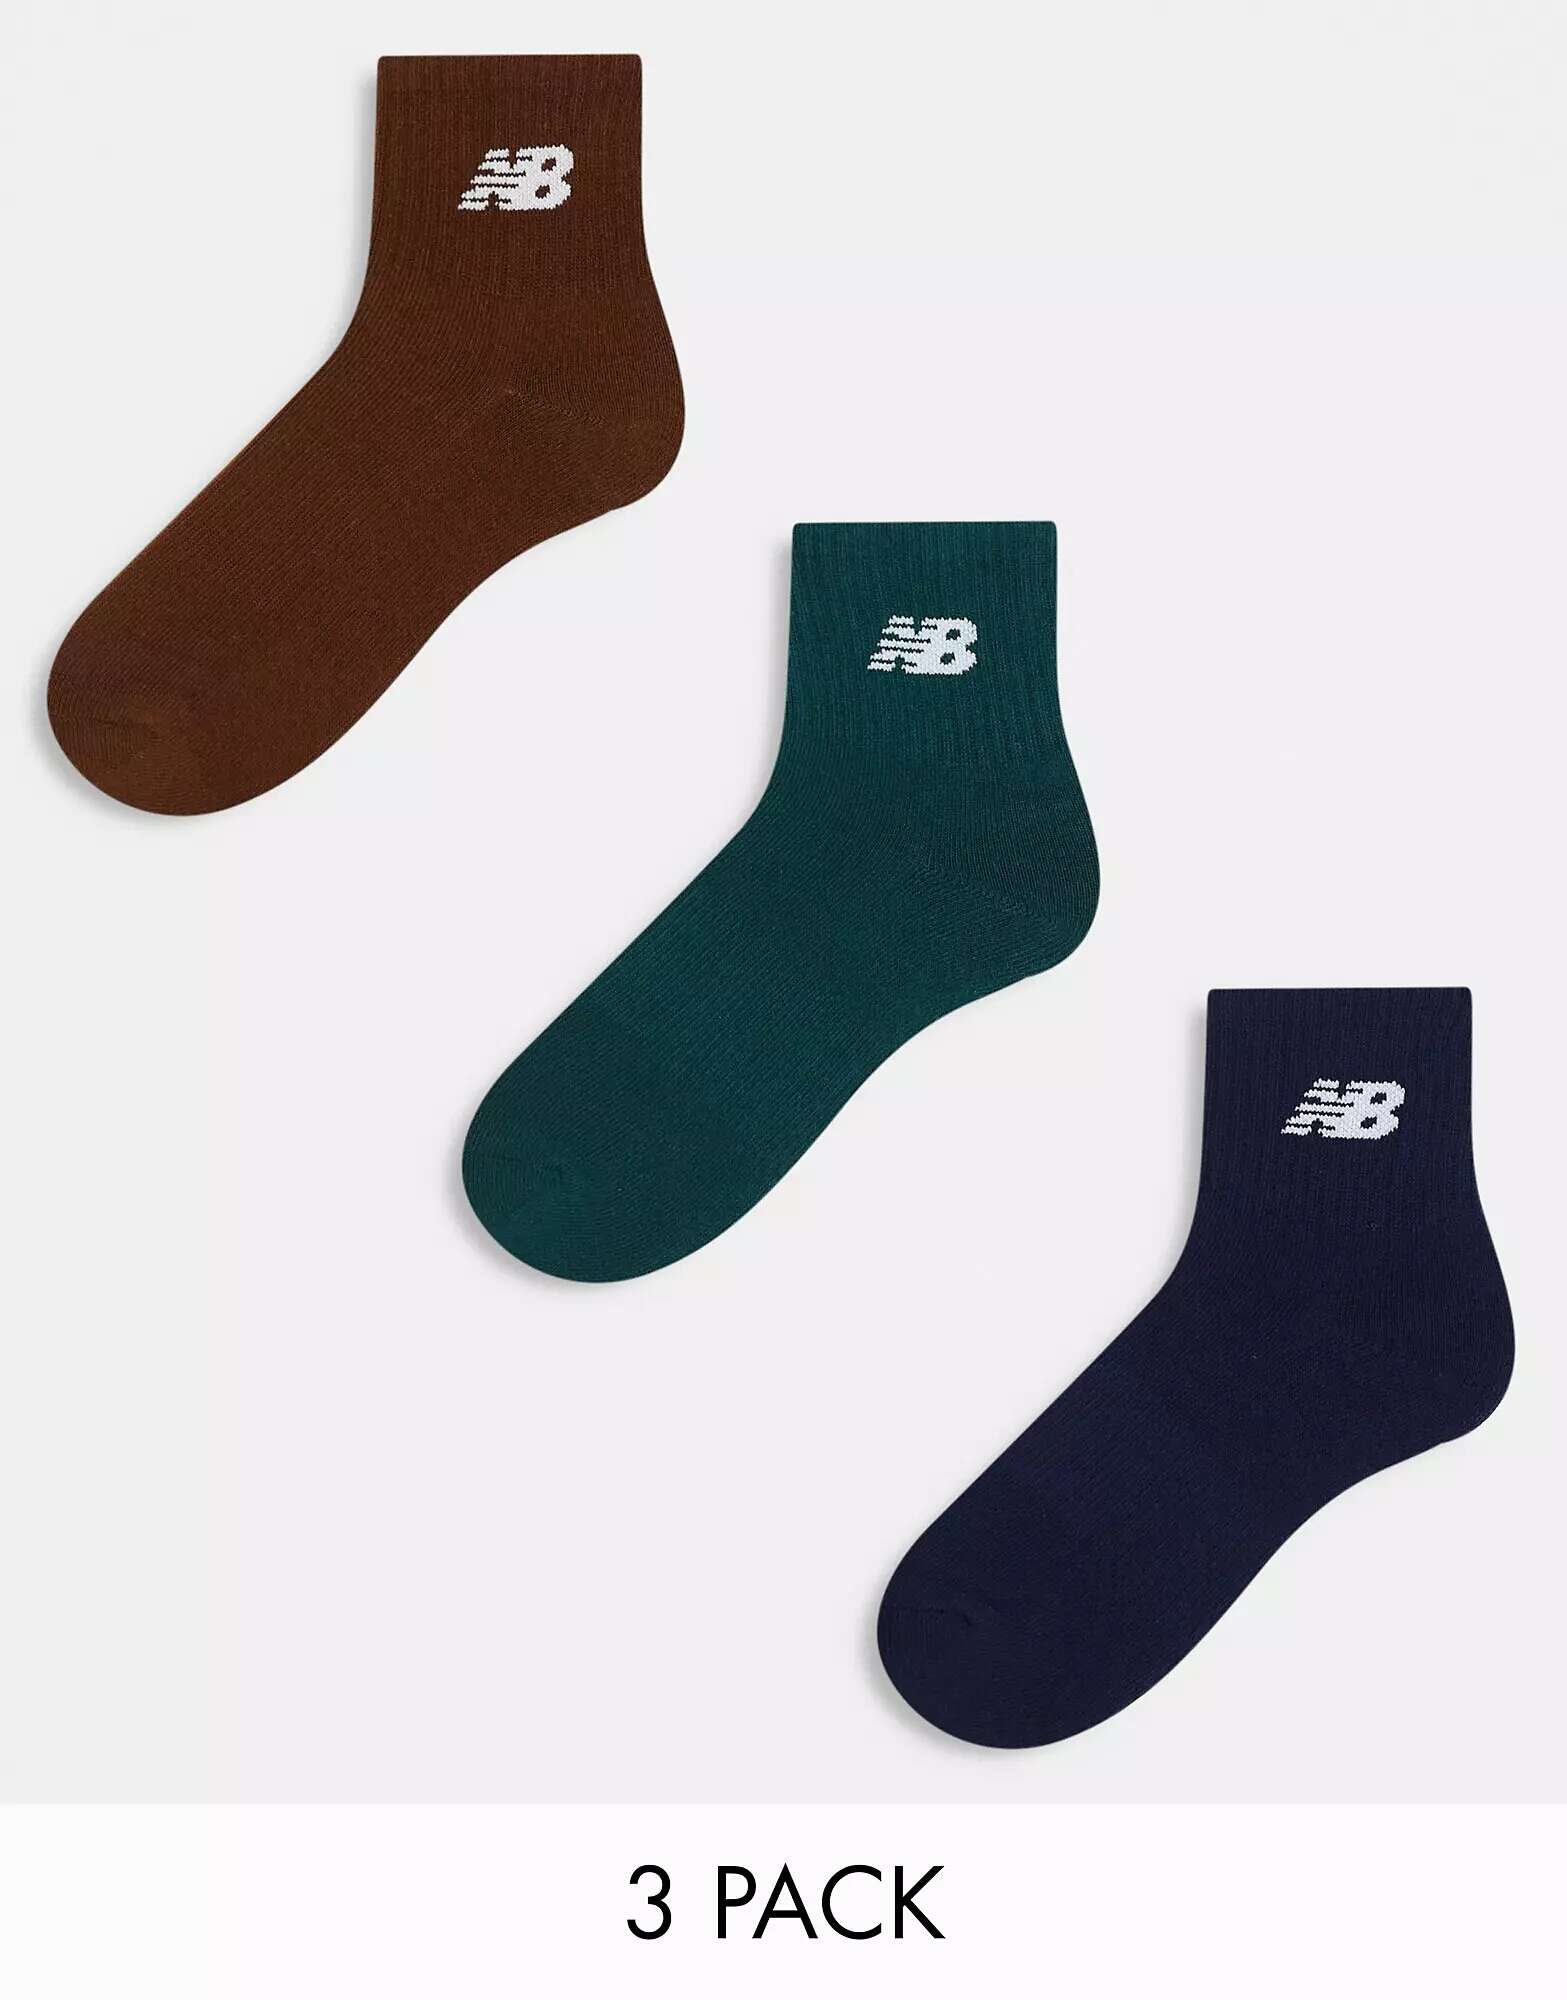 цена Три пары спортивных носков с логотипом New Balance цвета хаки, темно-синего и коричневого цвета